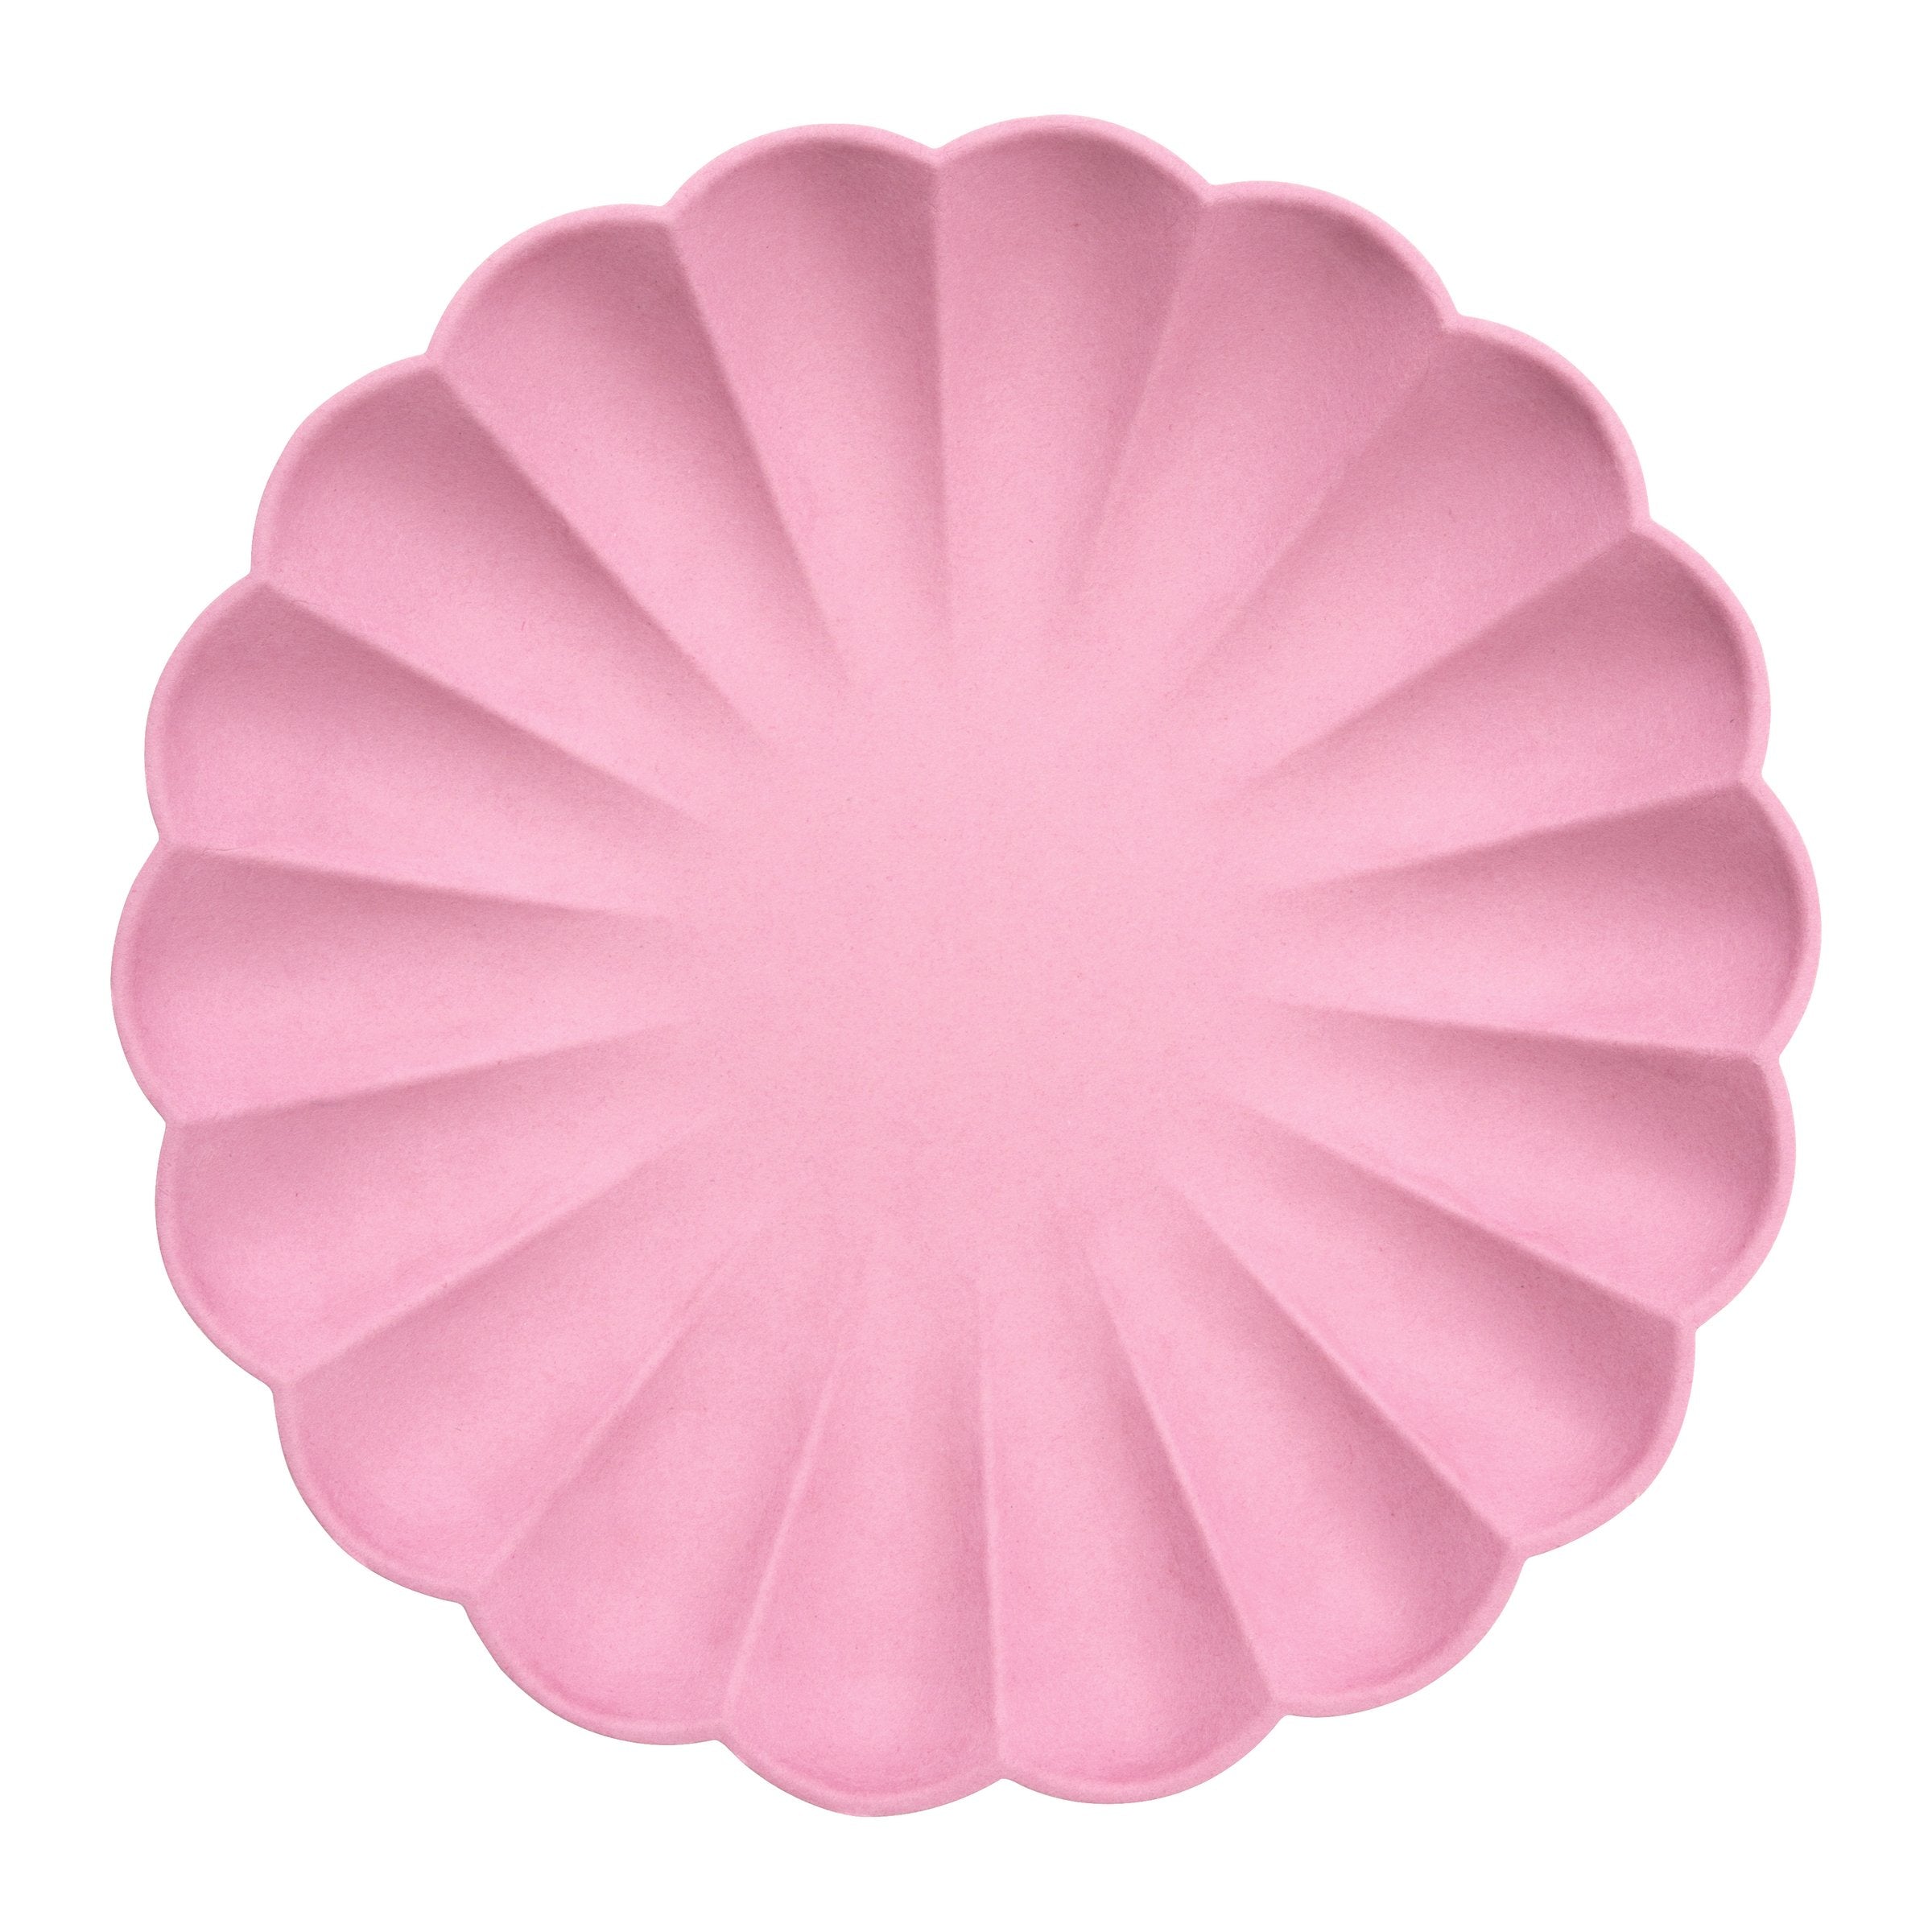 Large Bubblegum Pink Compostable Plates